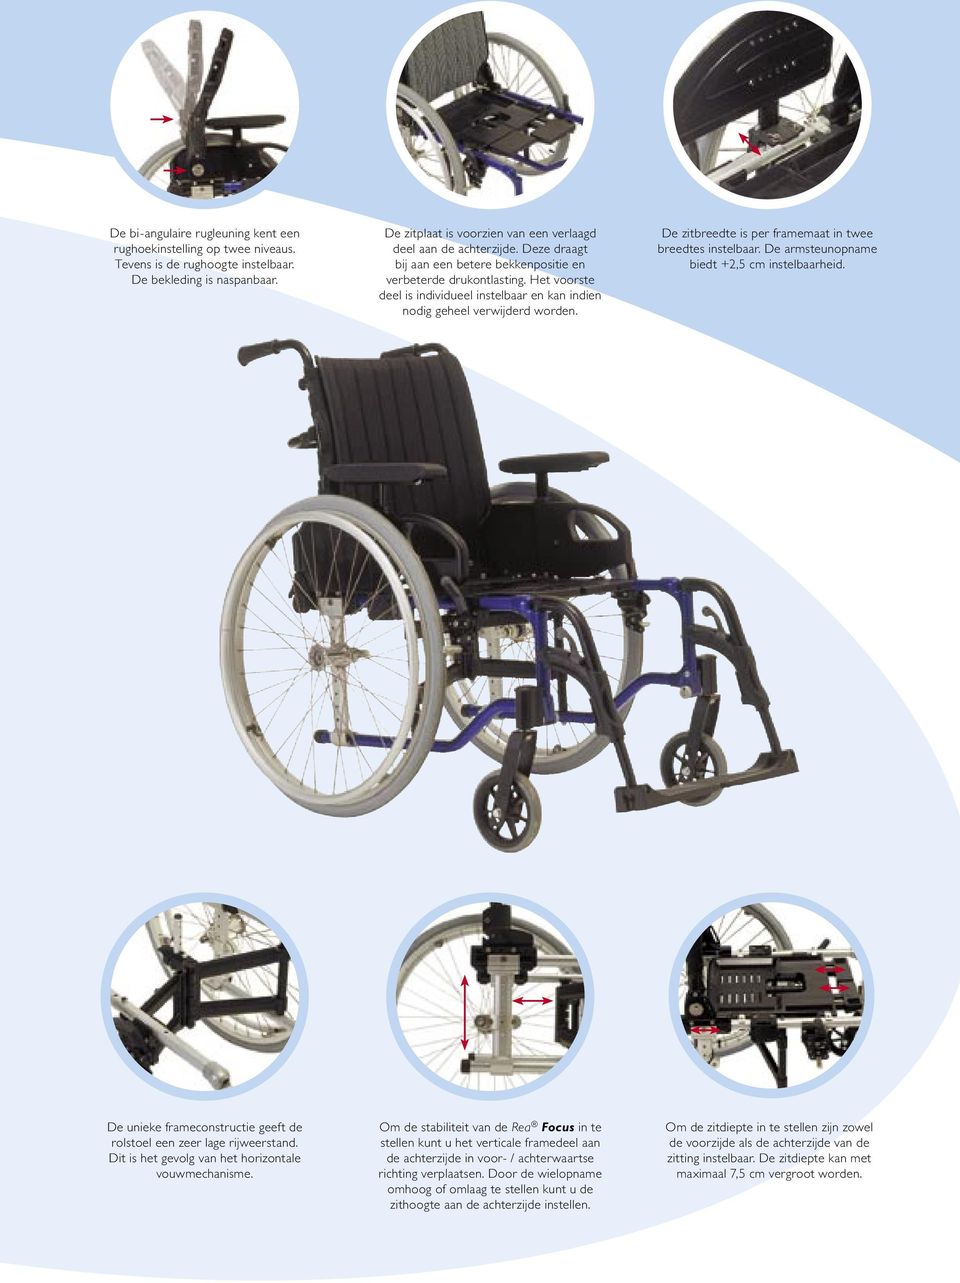 De zitbreedte is per framemaat in twee breedtes instelbaar. De armsteunopname biedt +2,5 cm instelbaarheid. De unieke frameconstructie geeft de rolstoel een zeer lage rijweerstand.